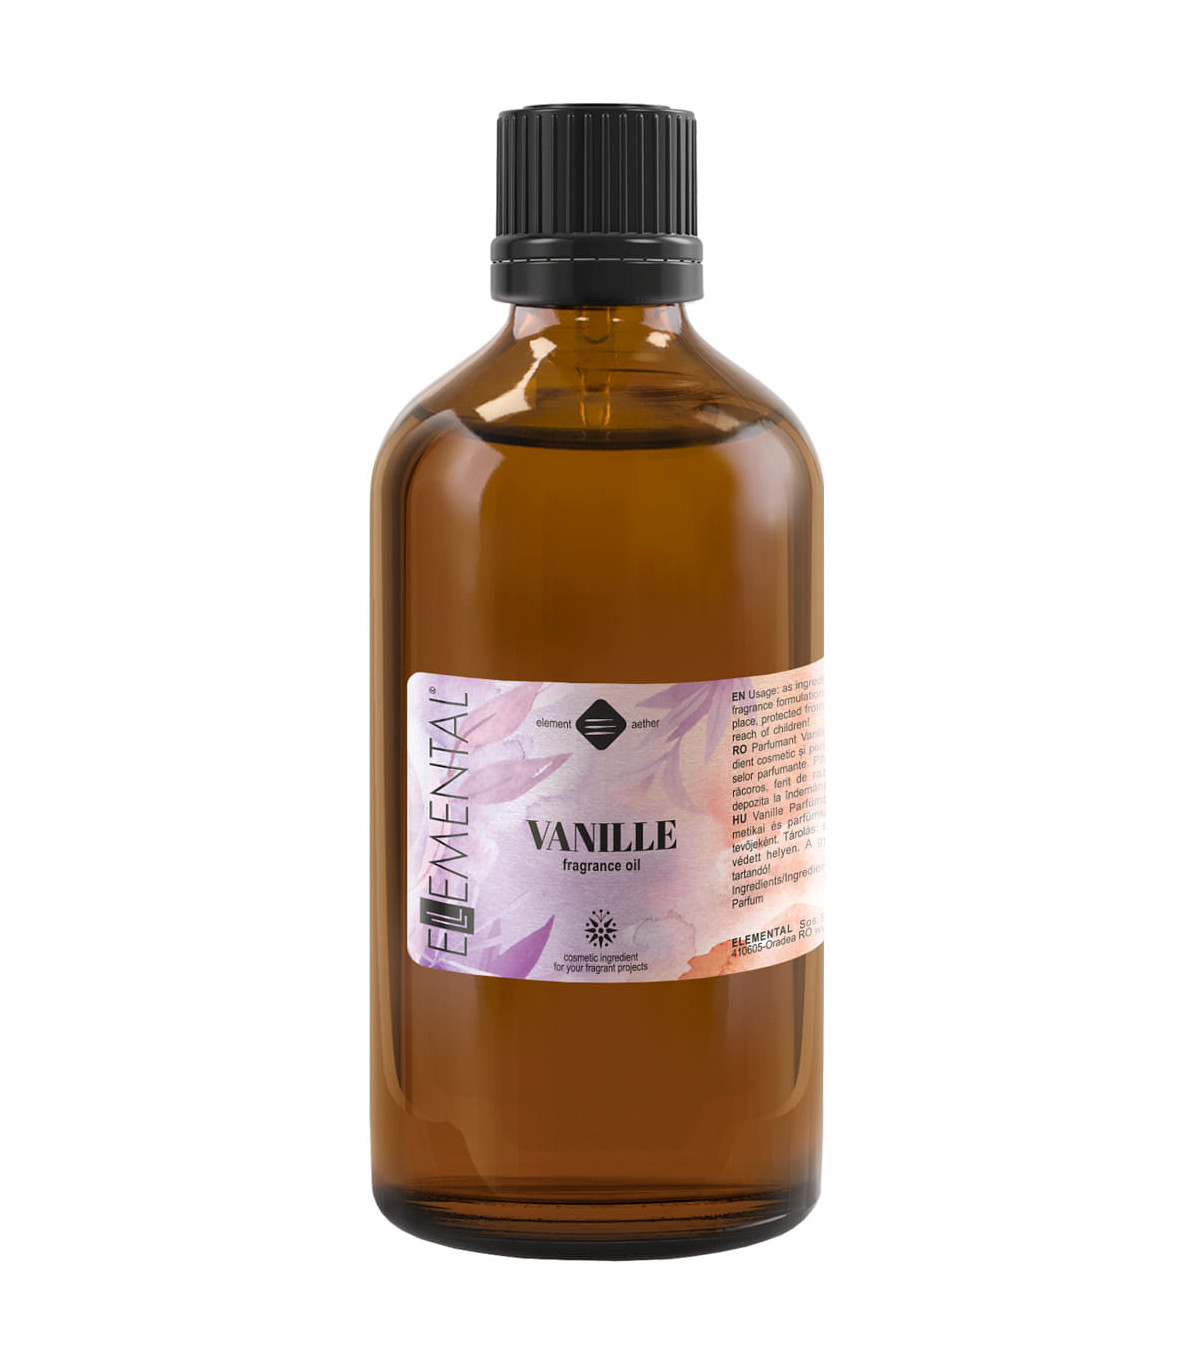 Vanille Fragrance oil